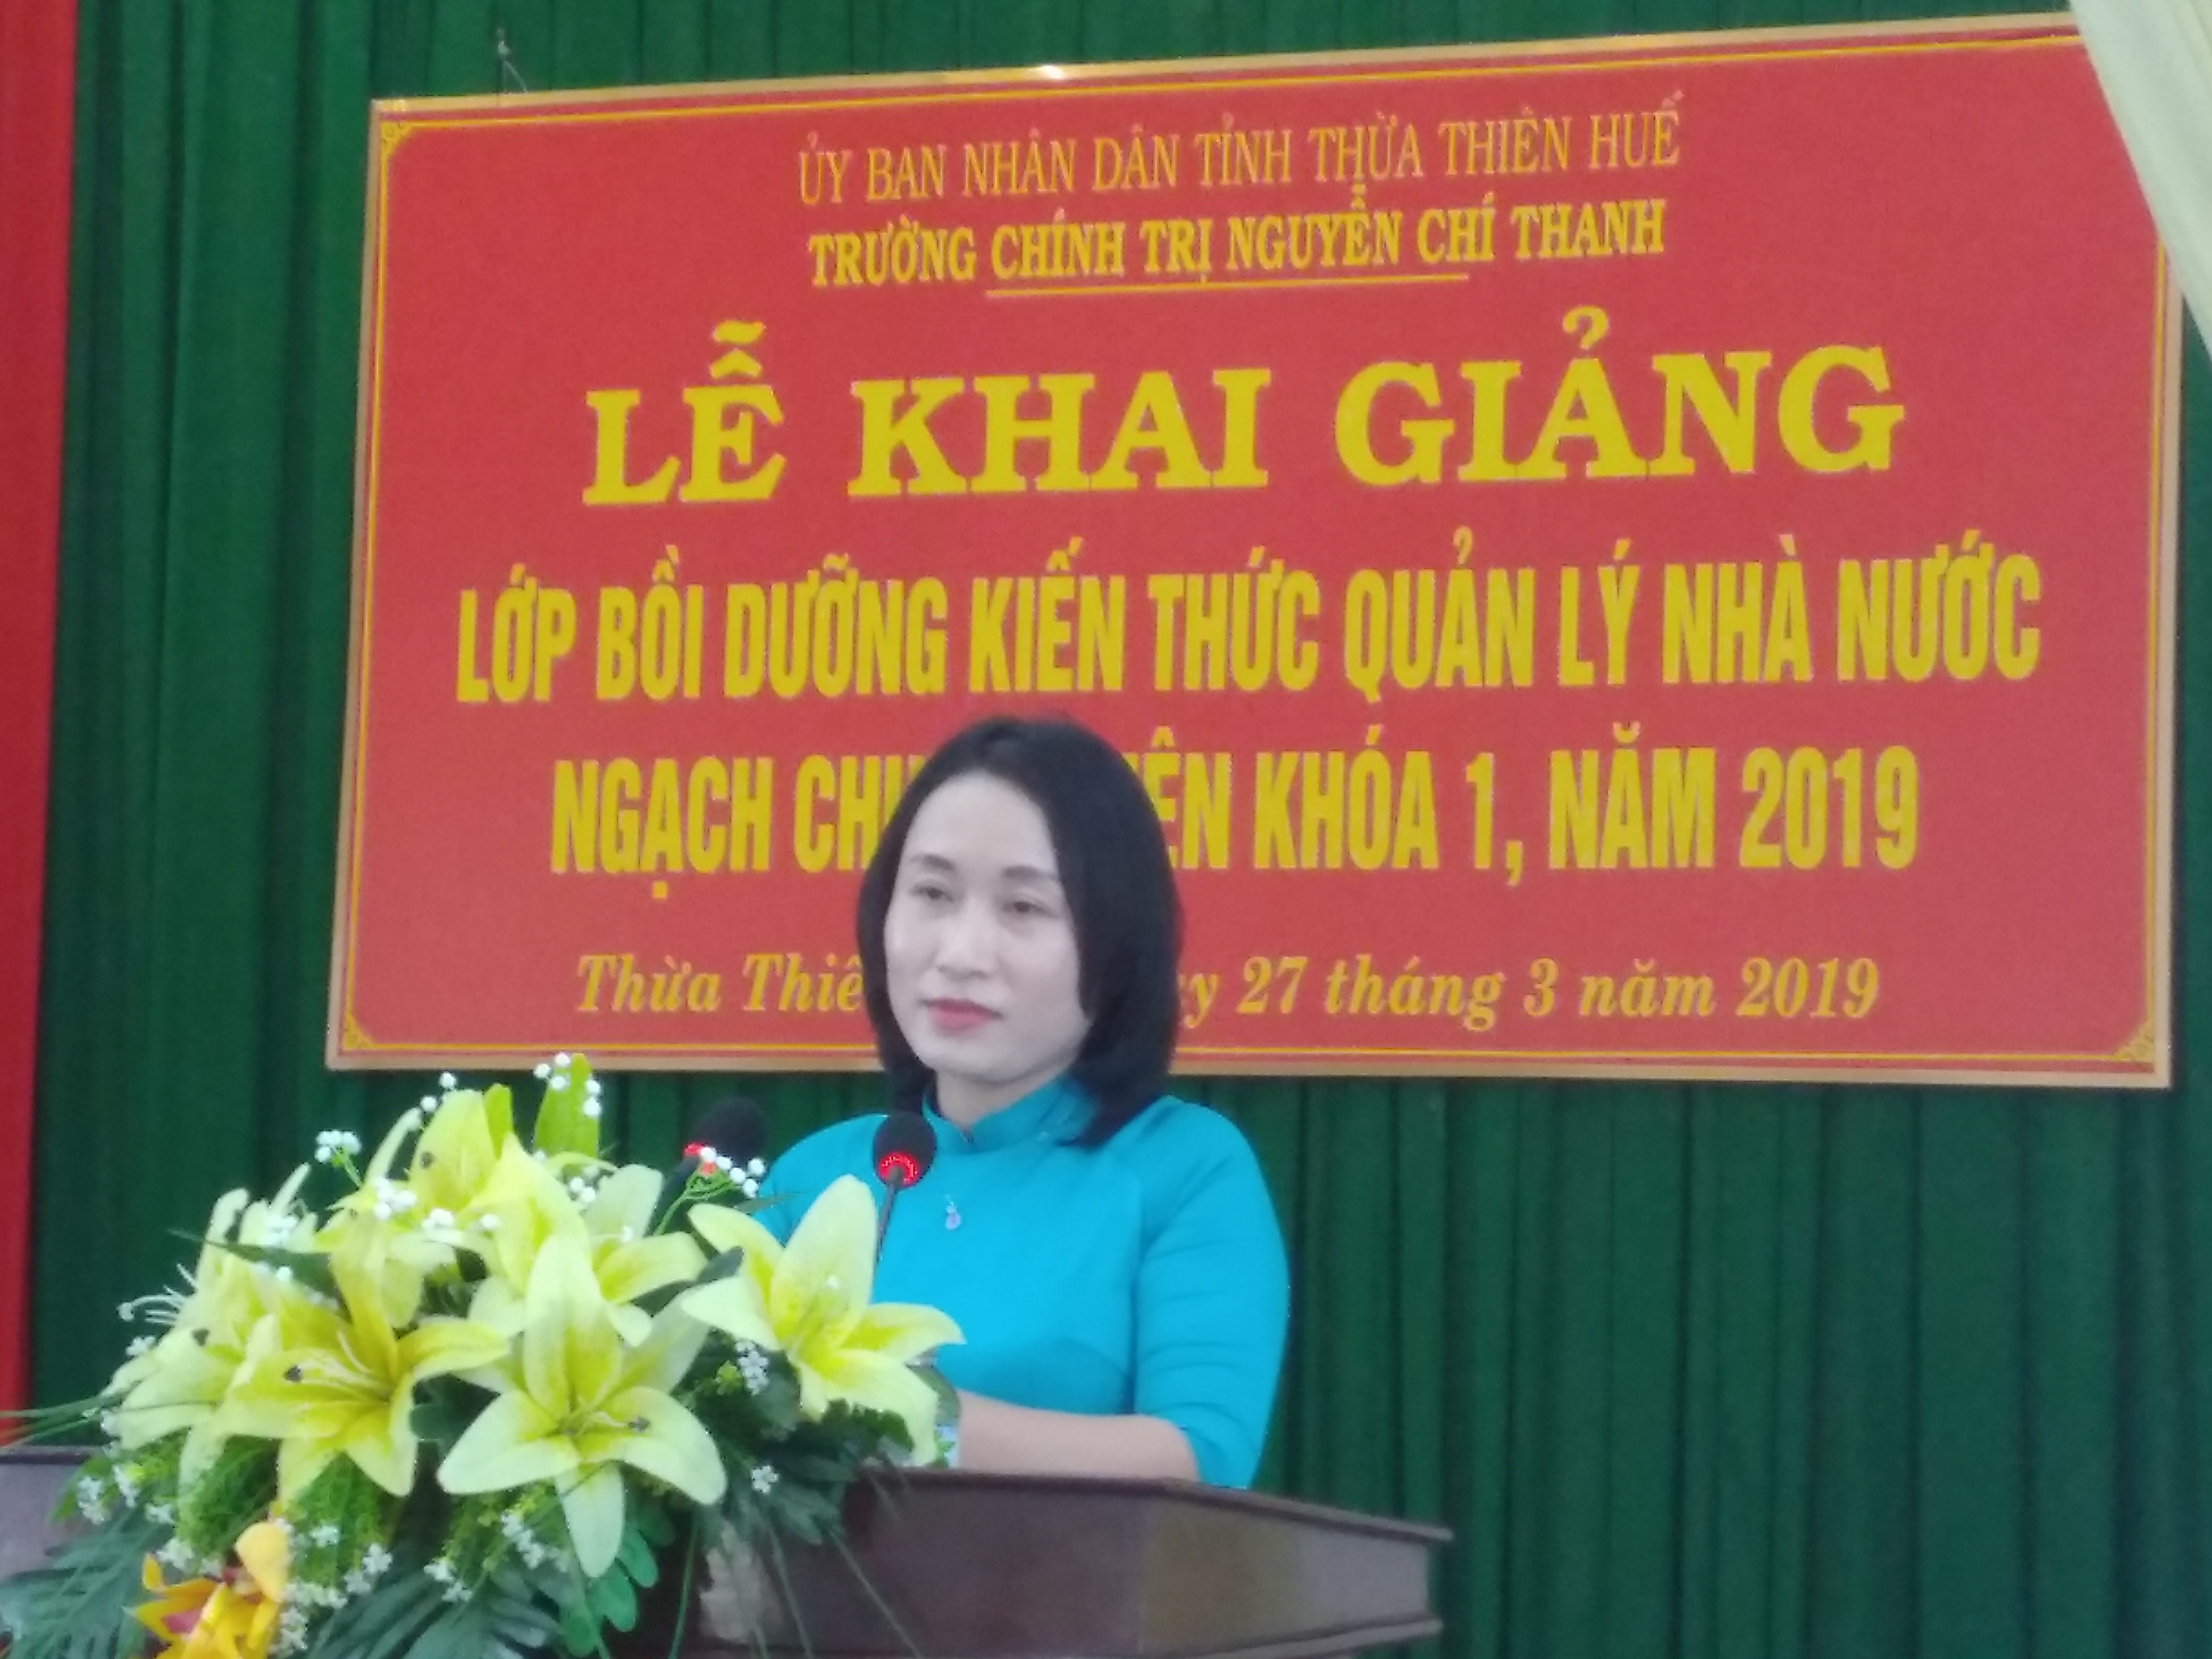 TS Nguyễn Thị Châu- Phó Hiệu trưởng trường Chính trị Nguyên Chí Thanh phát biểu tại buổi lễ khai giảng